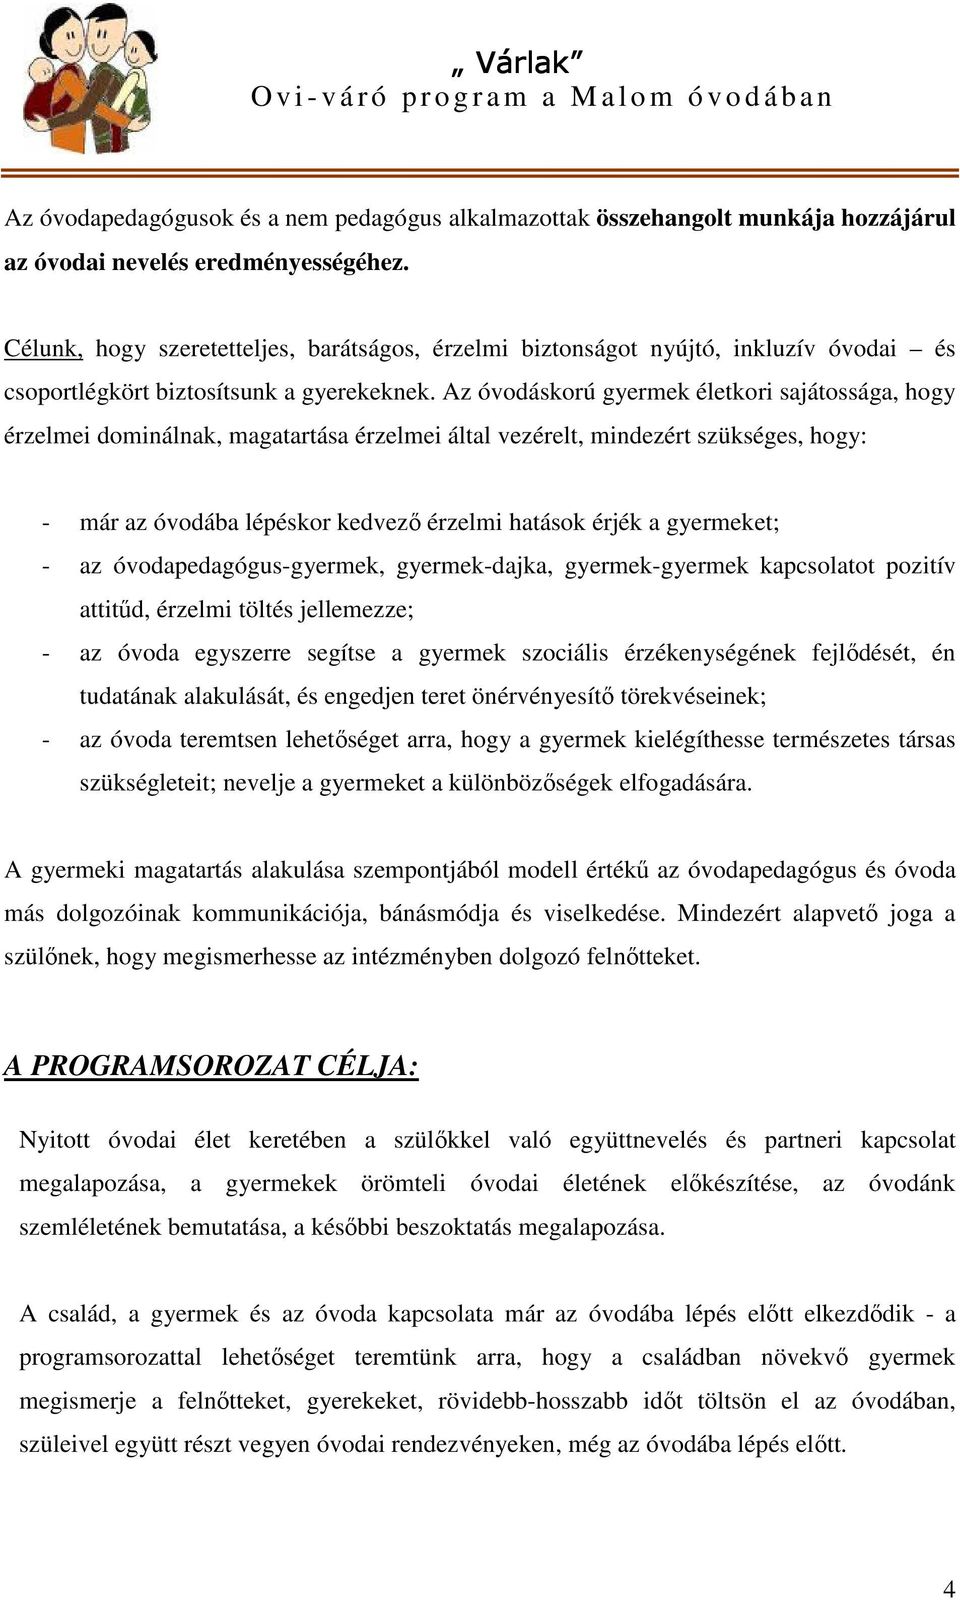 Várlak Ovi-váró váró program a Malom óvodában - PDF Ingyenes letöltés